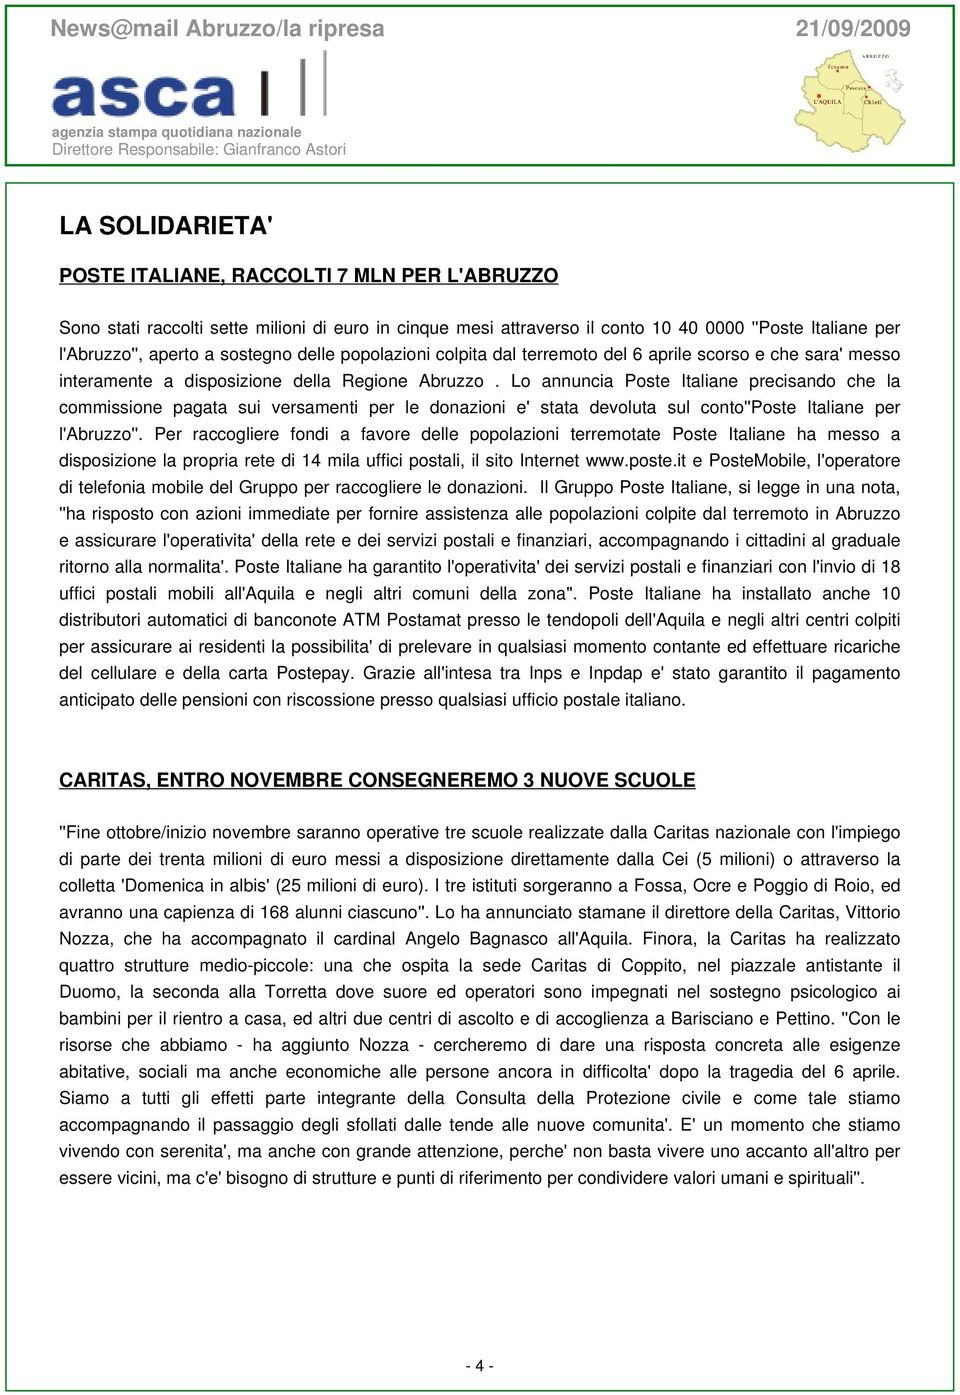 Lo annuncia Poste Italiane precisando che la commissione pagata sui versamenti per le donazioni e' stata devoluta sul conto''poste Italiane per l'abruzzo''.